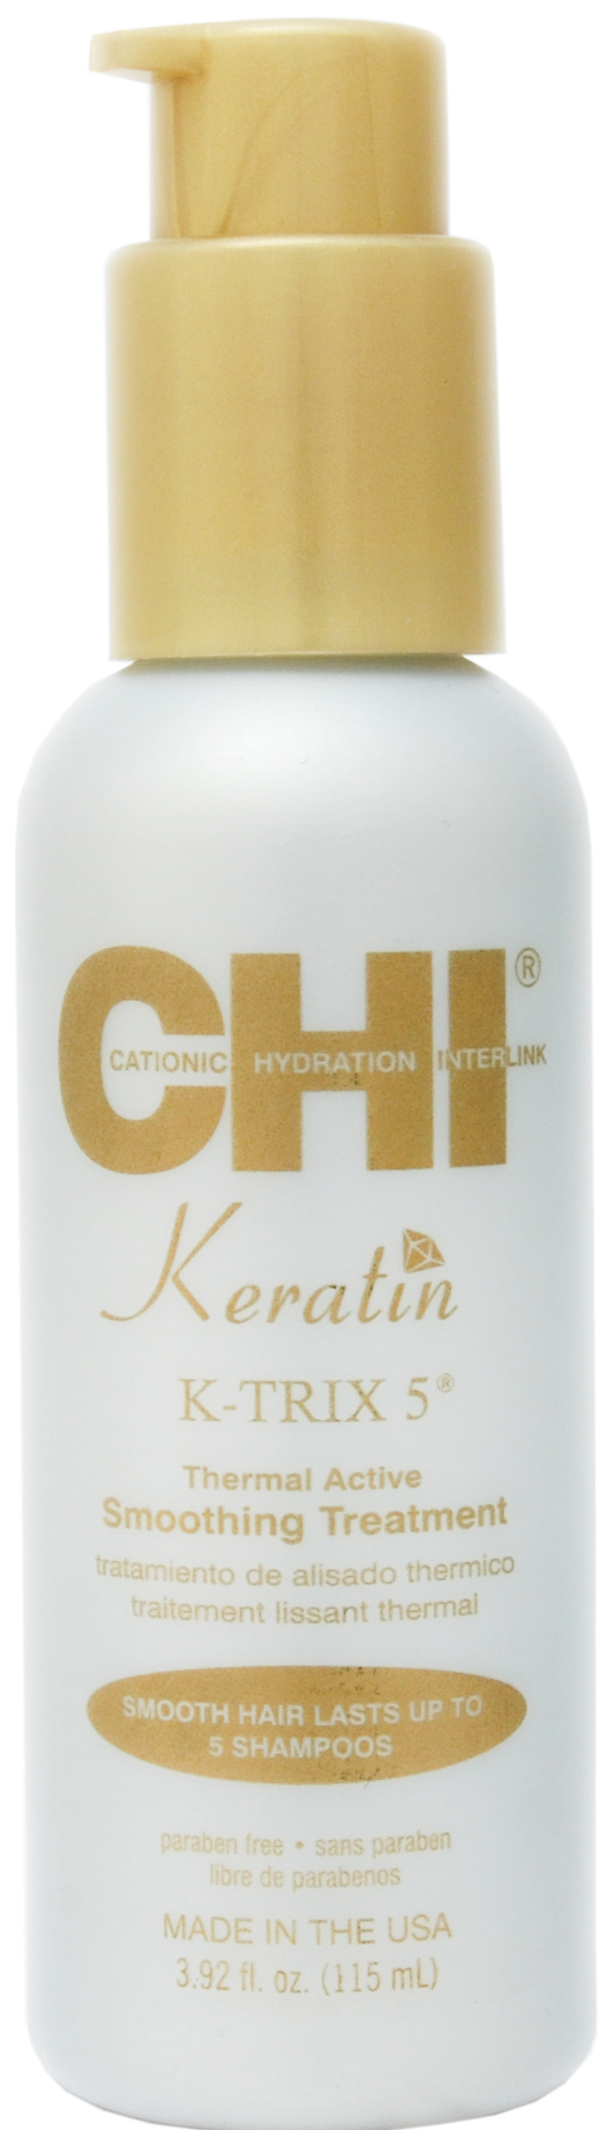 Эмульсия для волос CHI Keratin K-TRIX 5 Thermal Active Smoothing разглаживающая, 115 мл крем для волос keune care vital nutrition thermal 140 мл